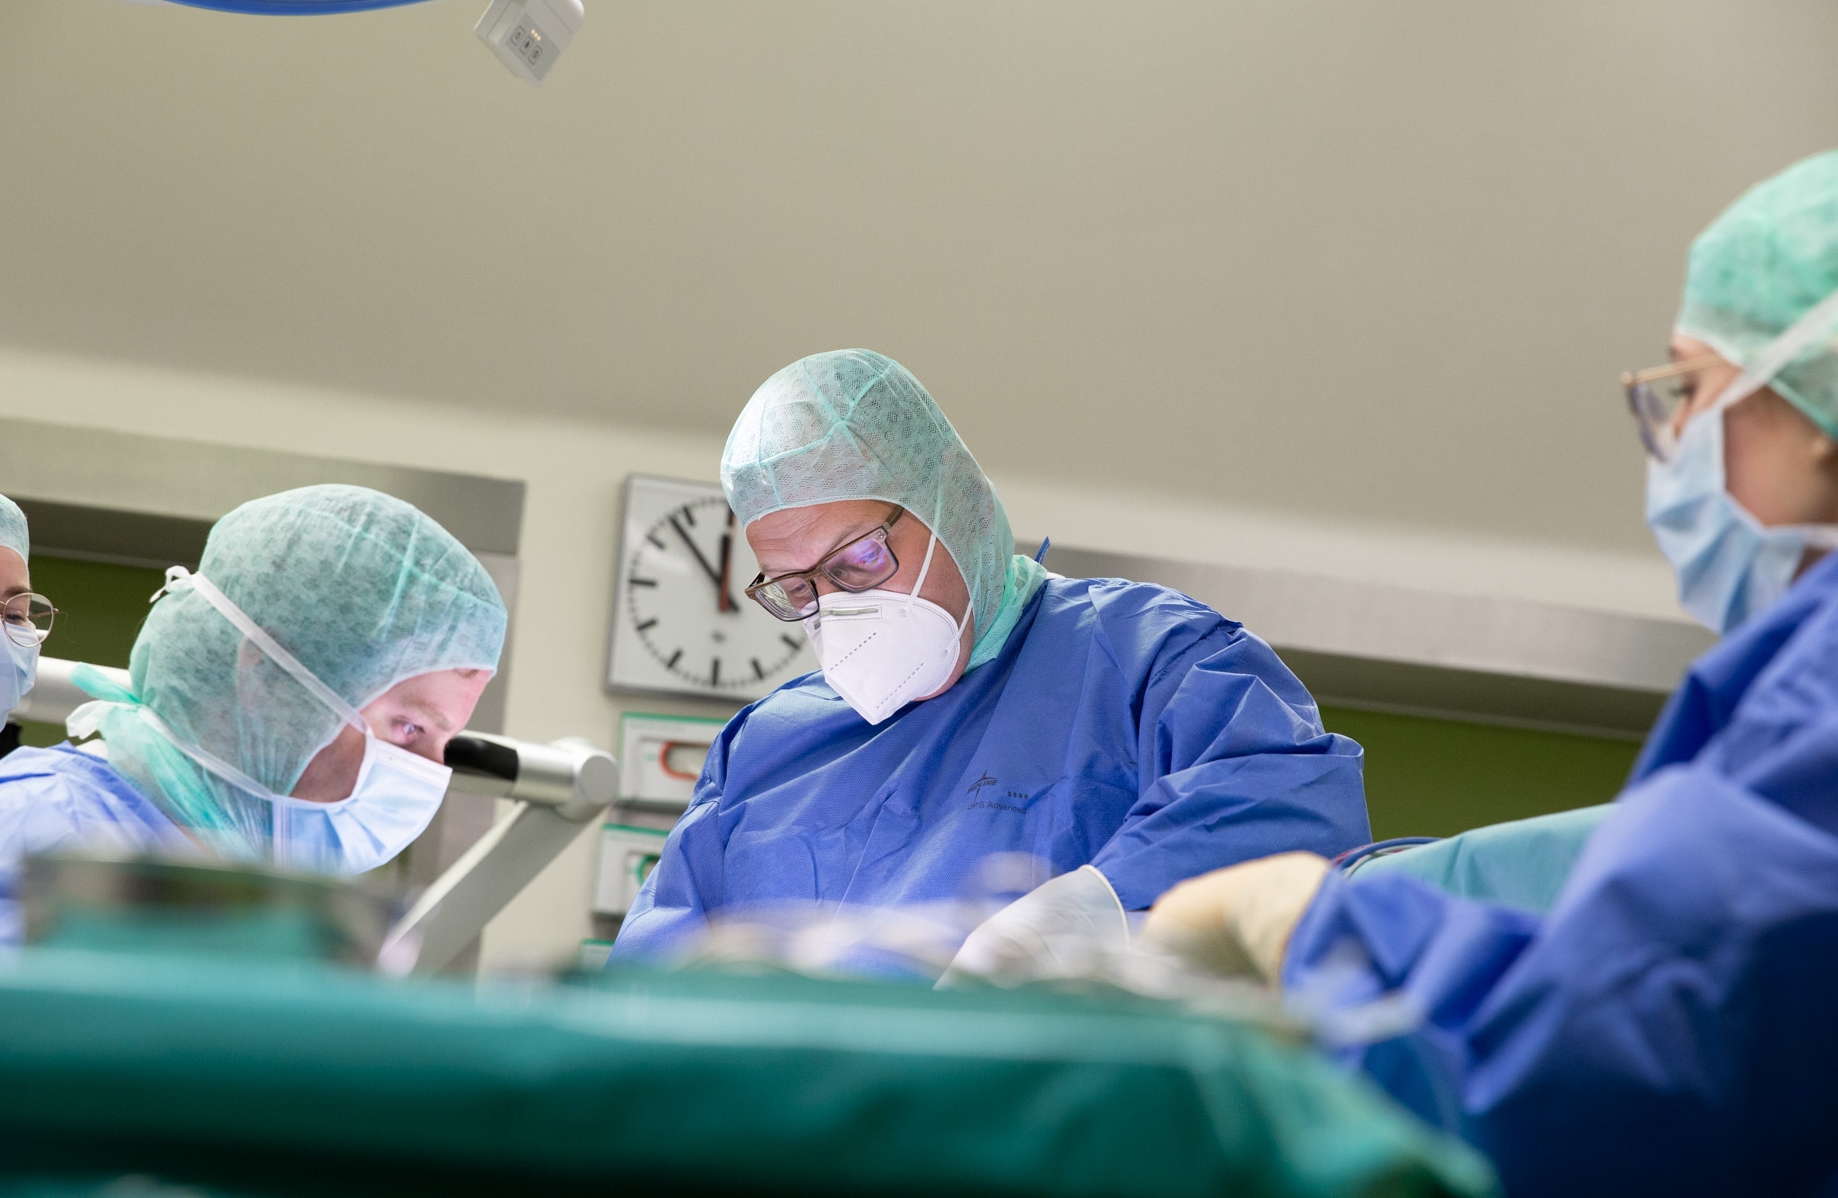 Hirntumor bei Hochschwangerer – Klinikum Dortmund rettet zwei Leben